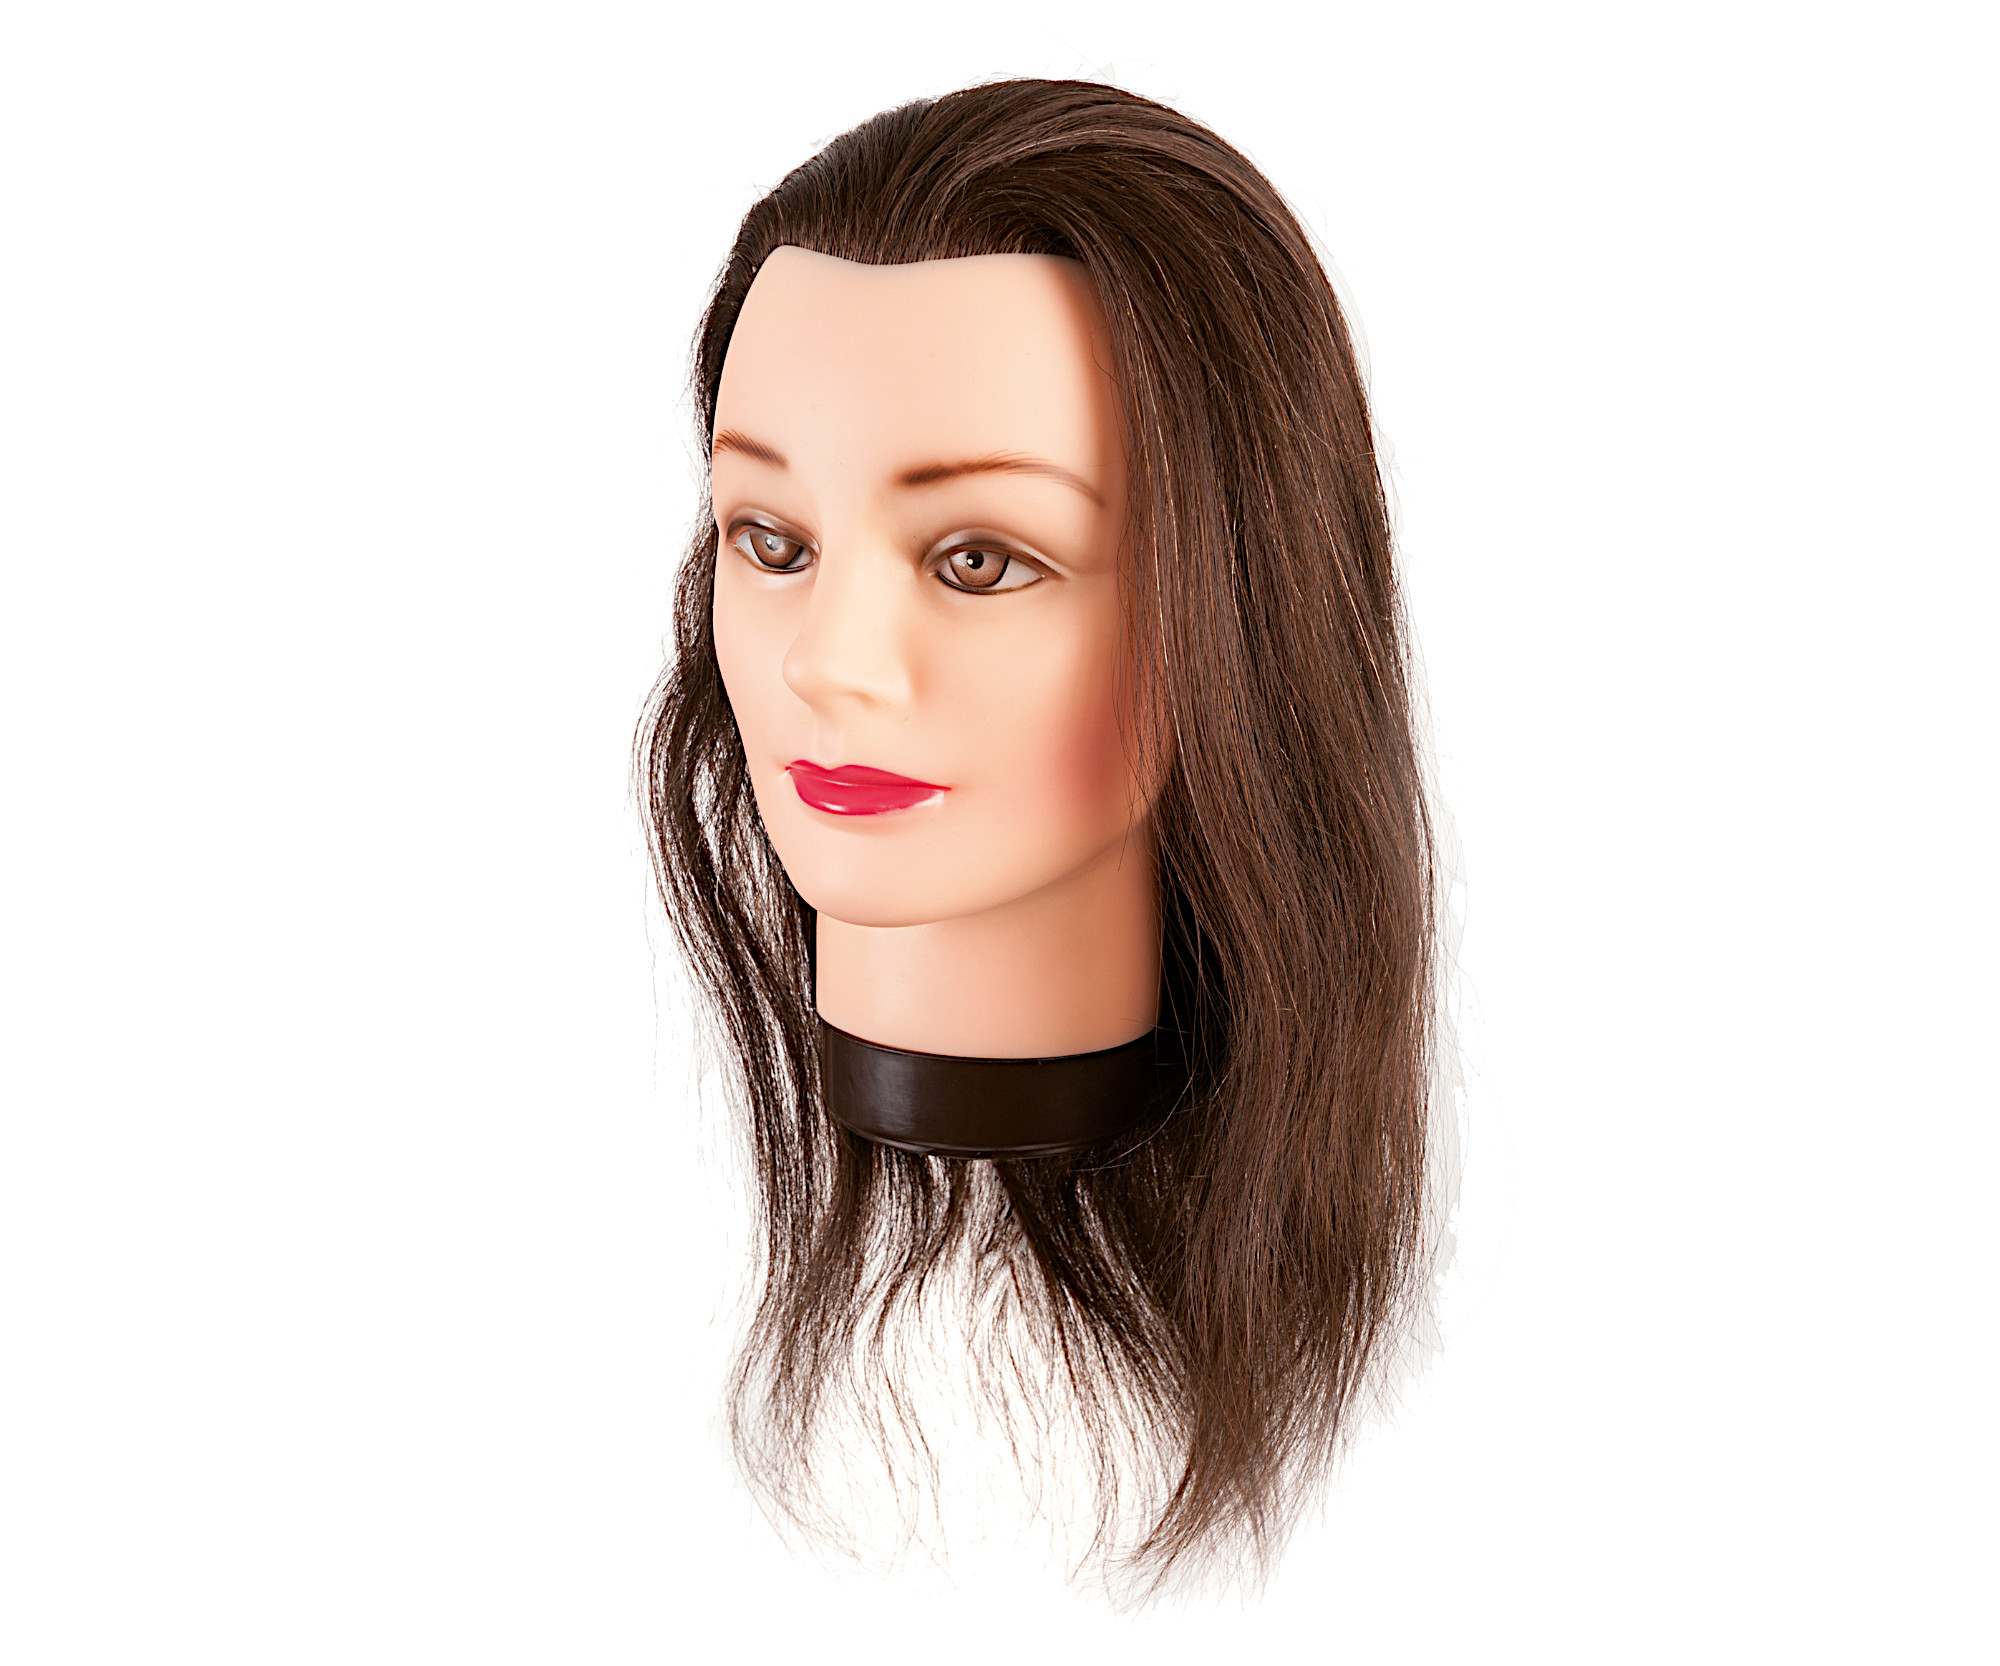 Cvičná hlava s přírodními vlasy Eurostil Profesional - kaštanově hnědá, 35-40 cm (00624) + dárek zdarma